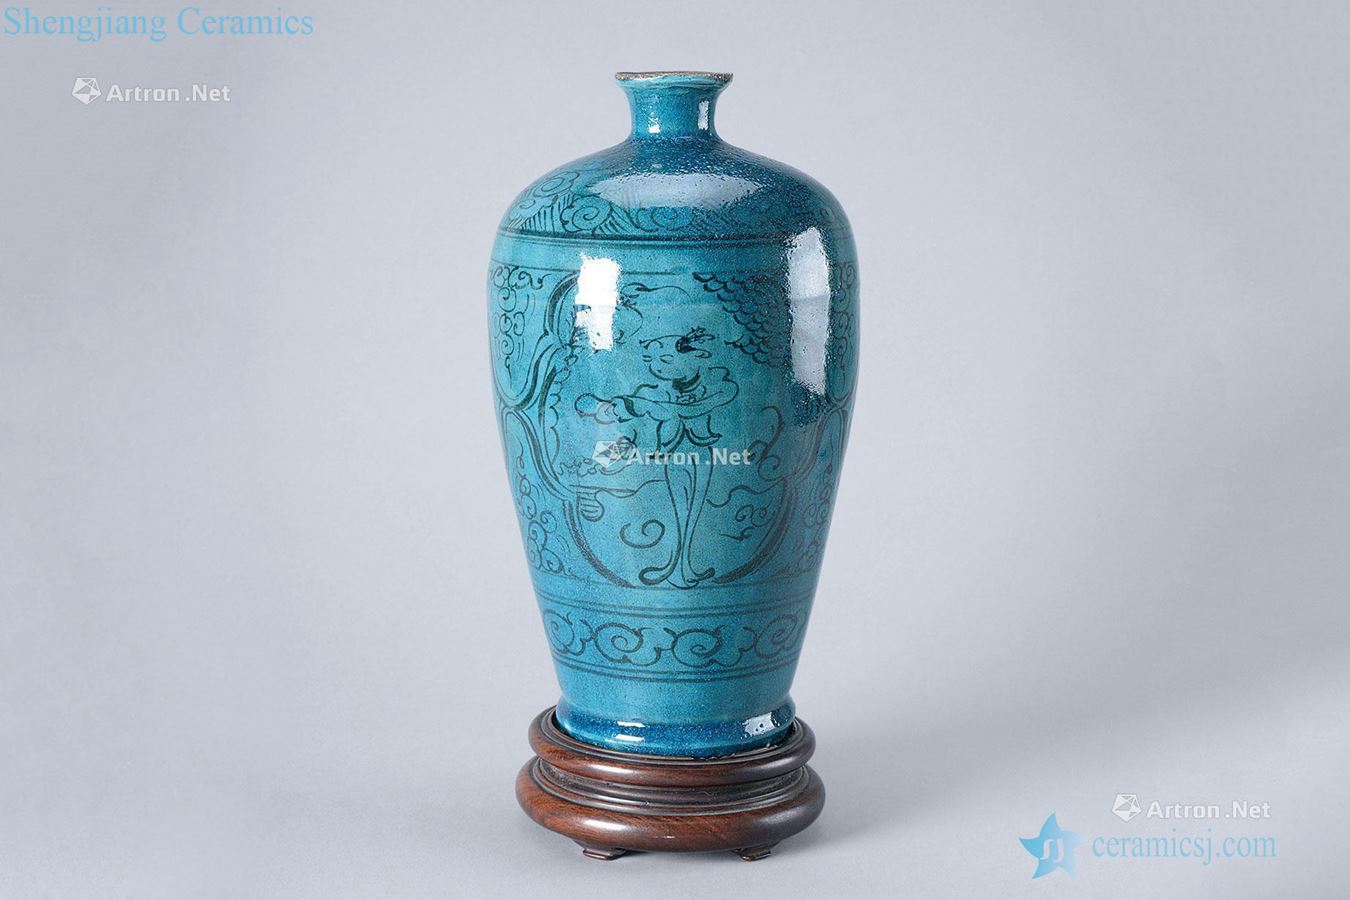 The yuan dynasty, Ming dynasty (1279-1644) grain mei bottle of blue glaze characters